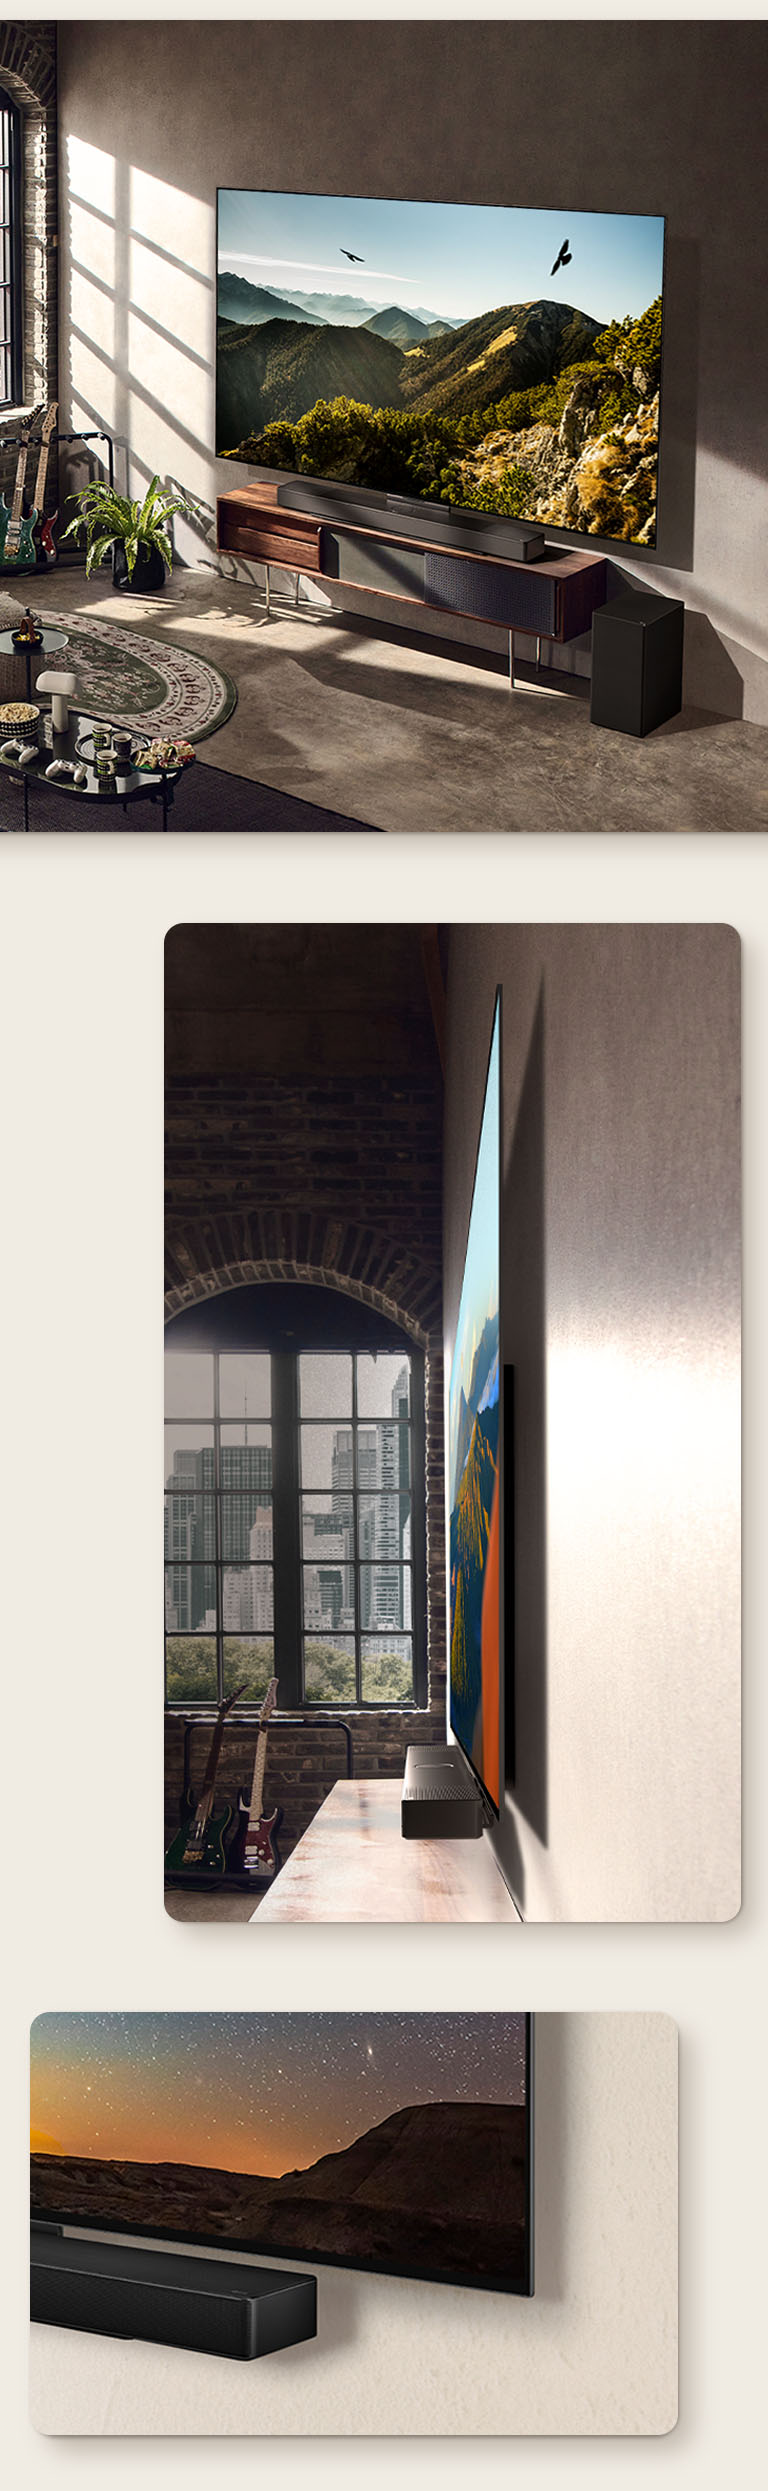 Imagen del LG OLED C3 con una barra de sonido en la pared de una habitación artística. Vista lateral de las dimensiones delgadas del LG OLED C3 frente a una ventana con vista a un paisaje urbano. La esquina inferior de la barra de sonido del LG OLED C3.